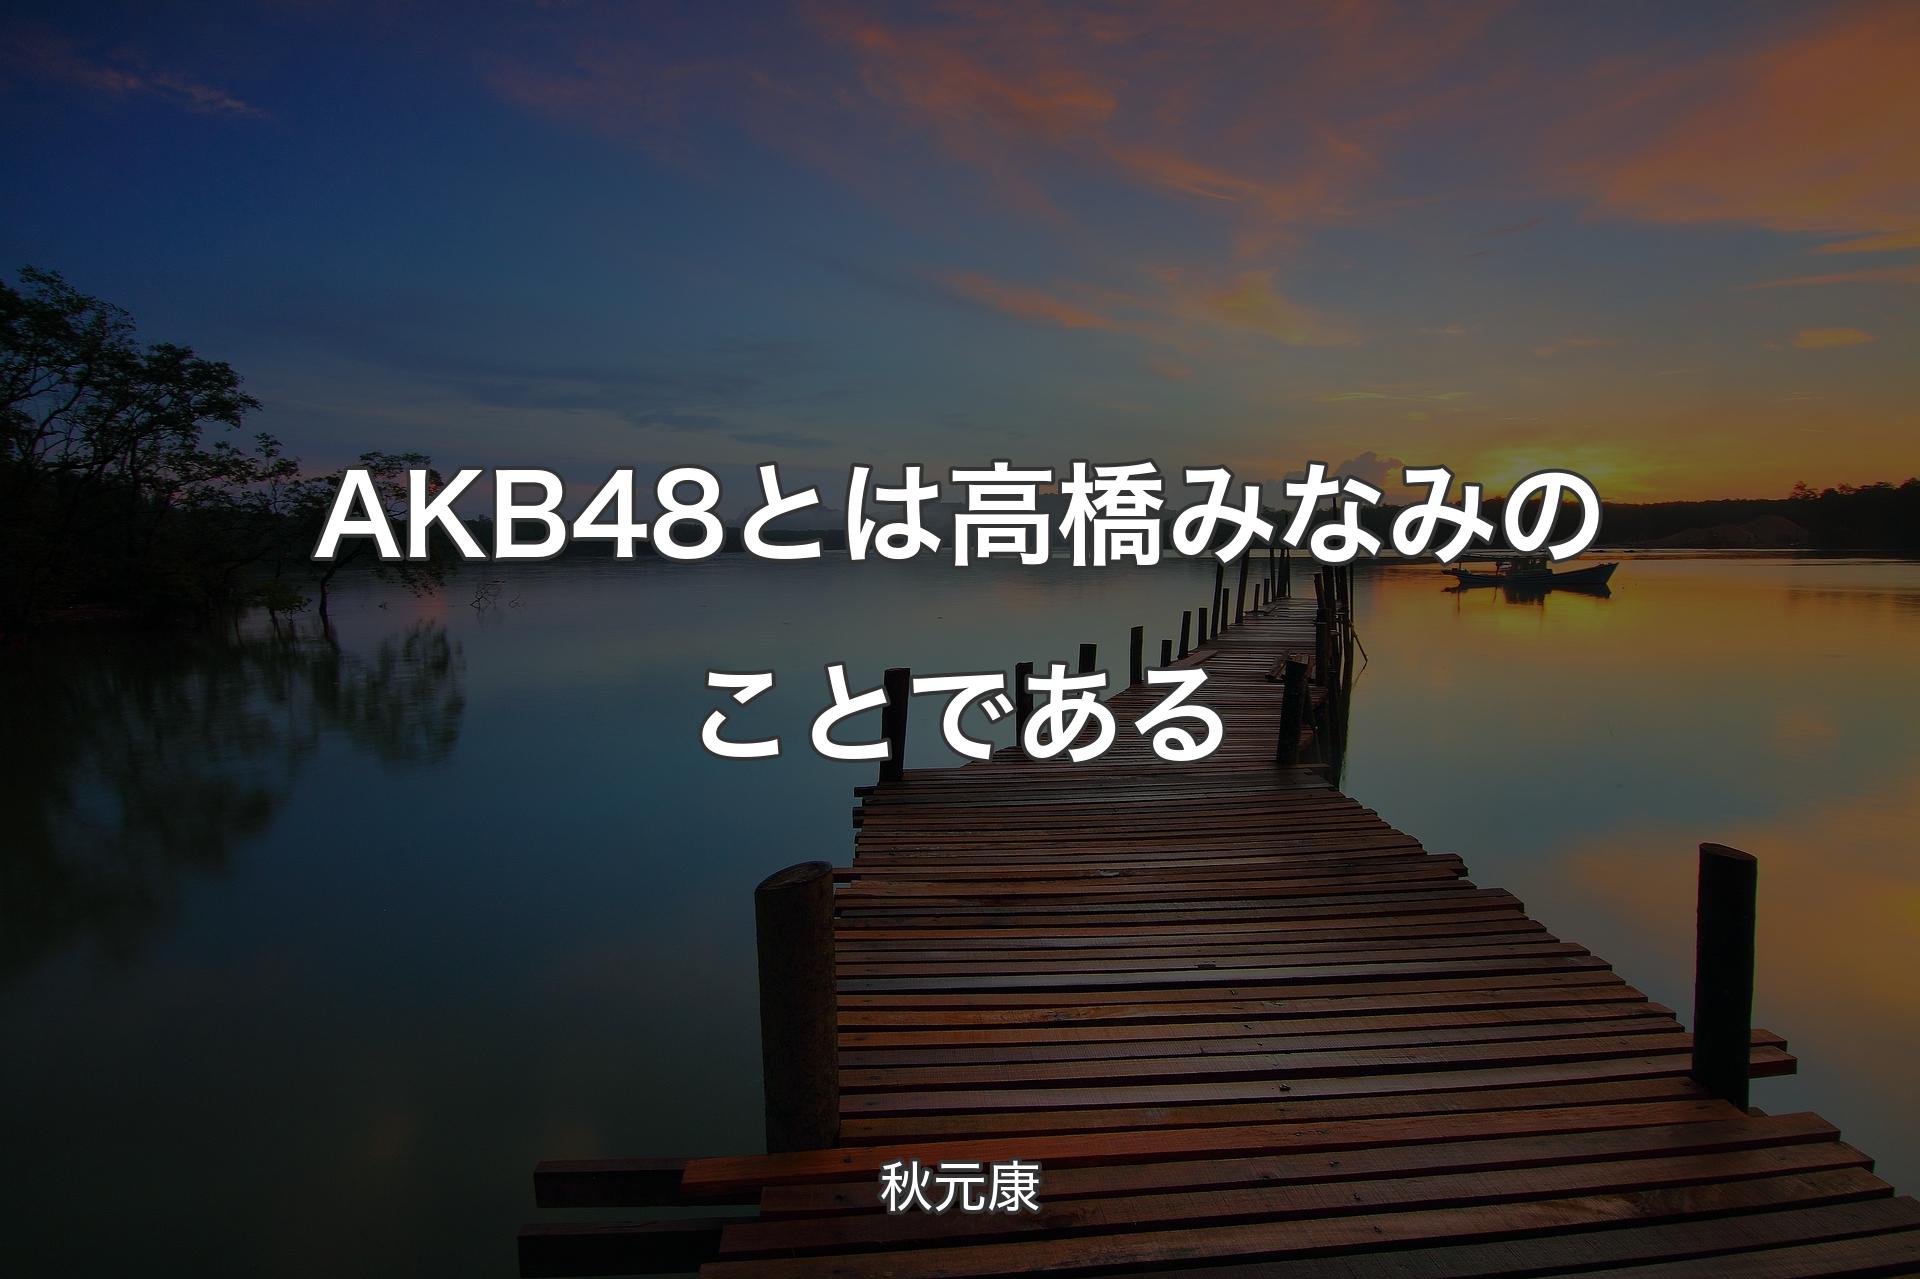 【背景3】AKB48とは高橋みなみのことである - 秋元康